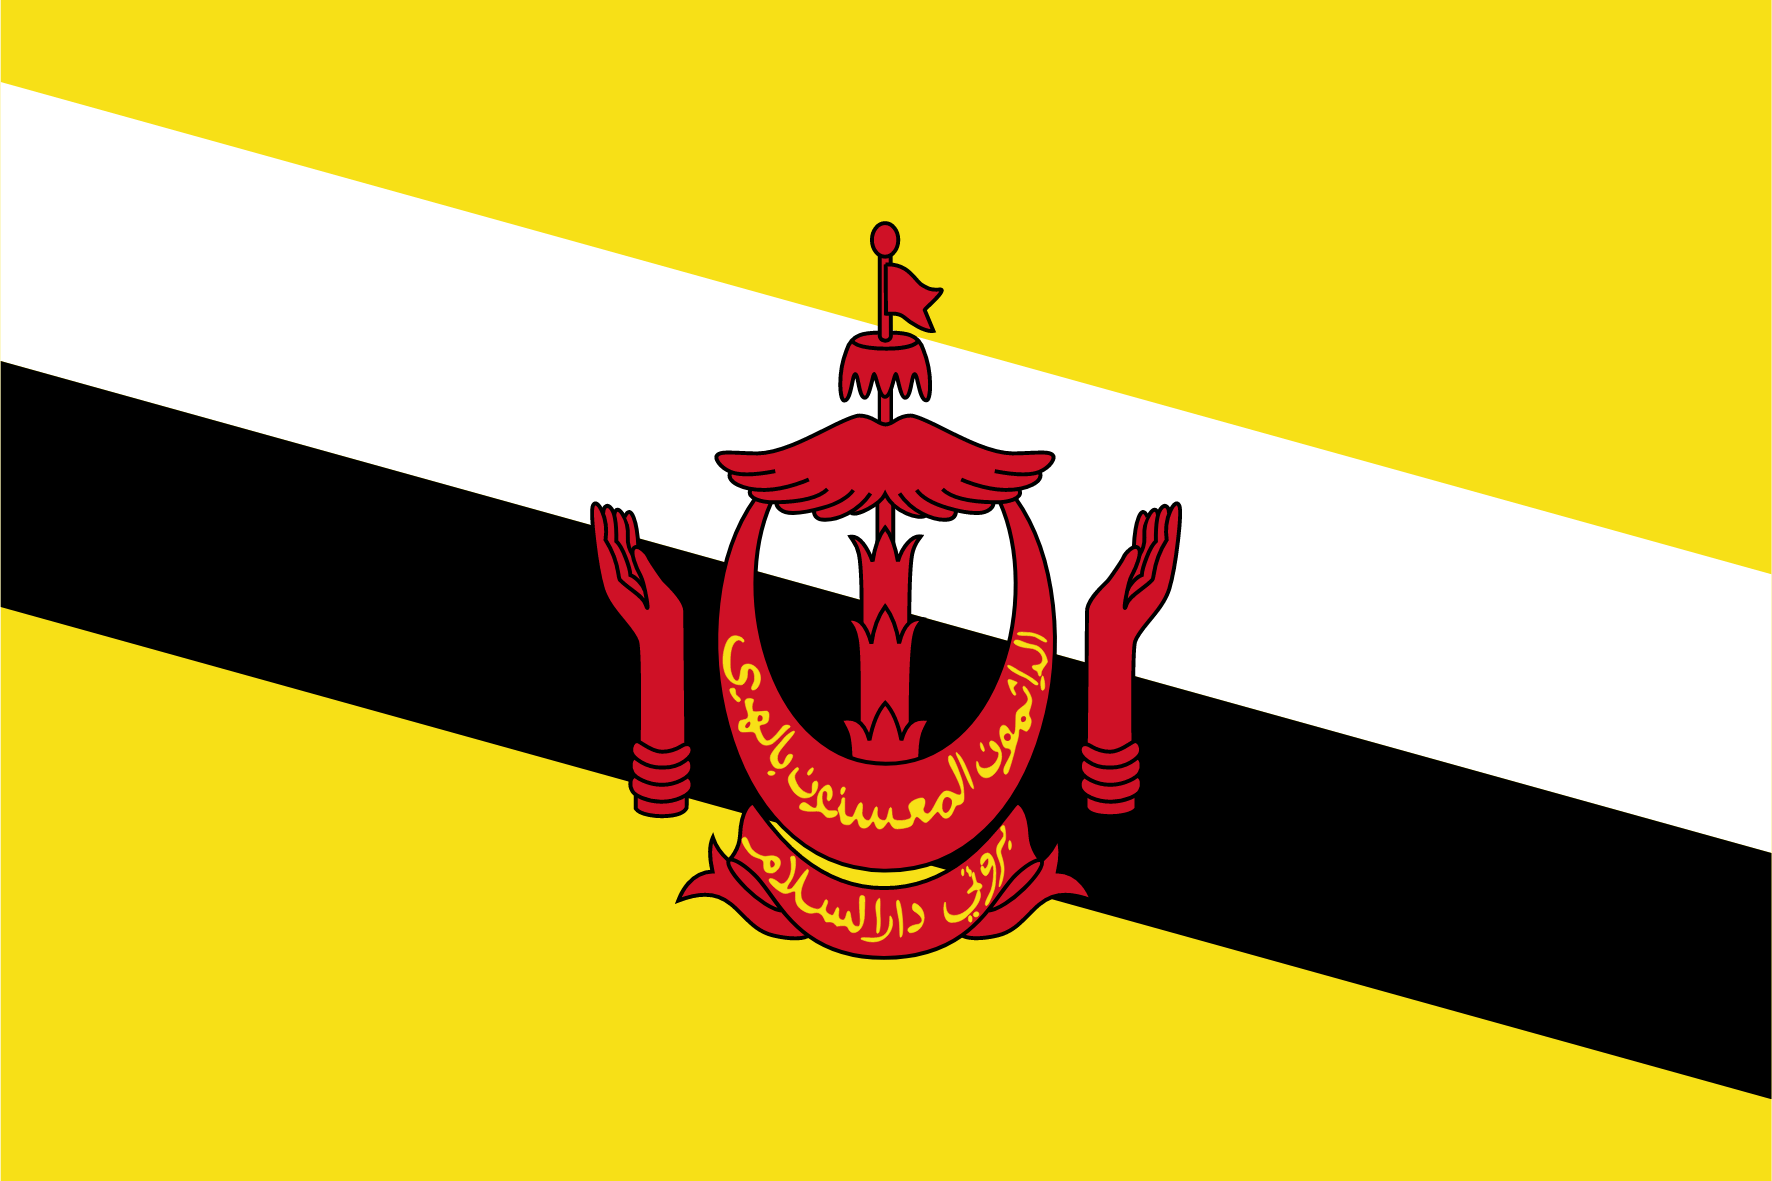 Nhóm khảo sát trực tuyến - market research ở Brunei